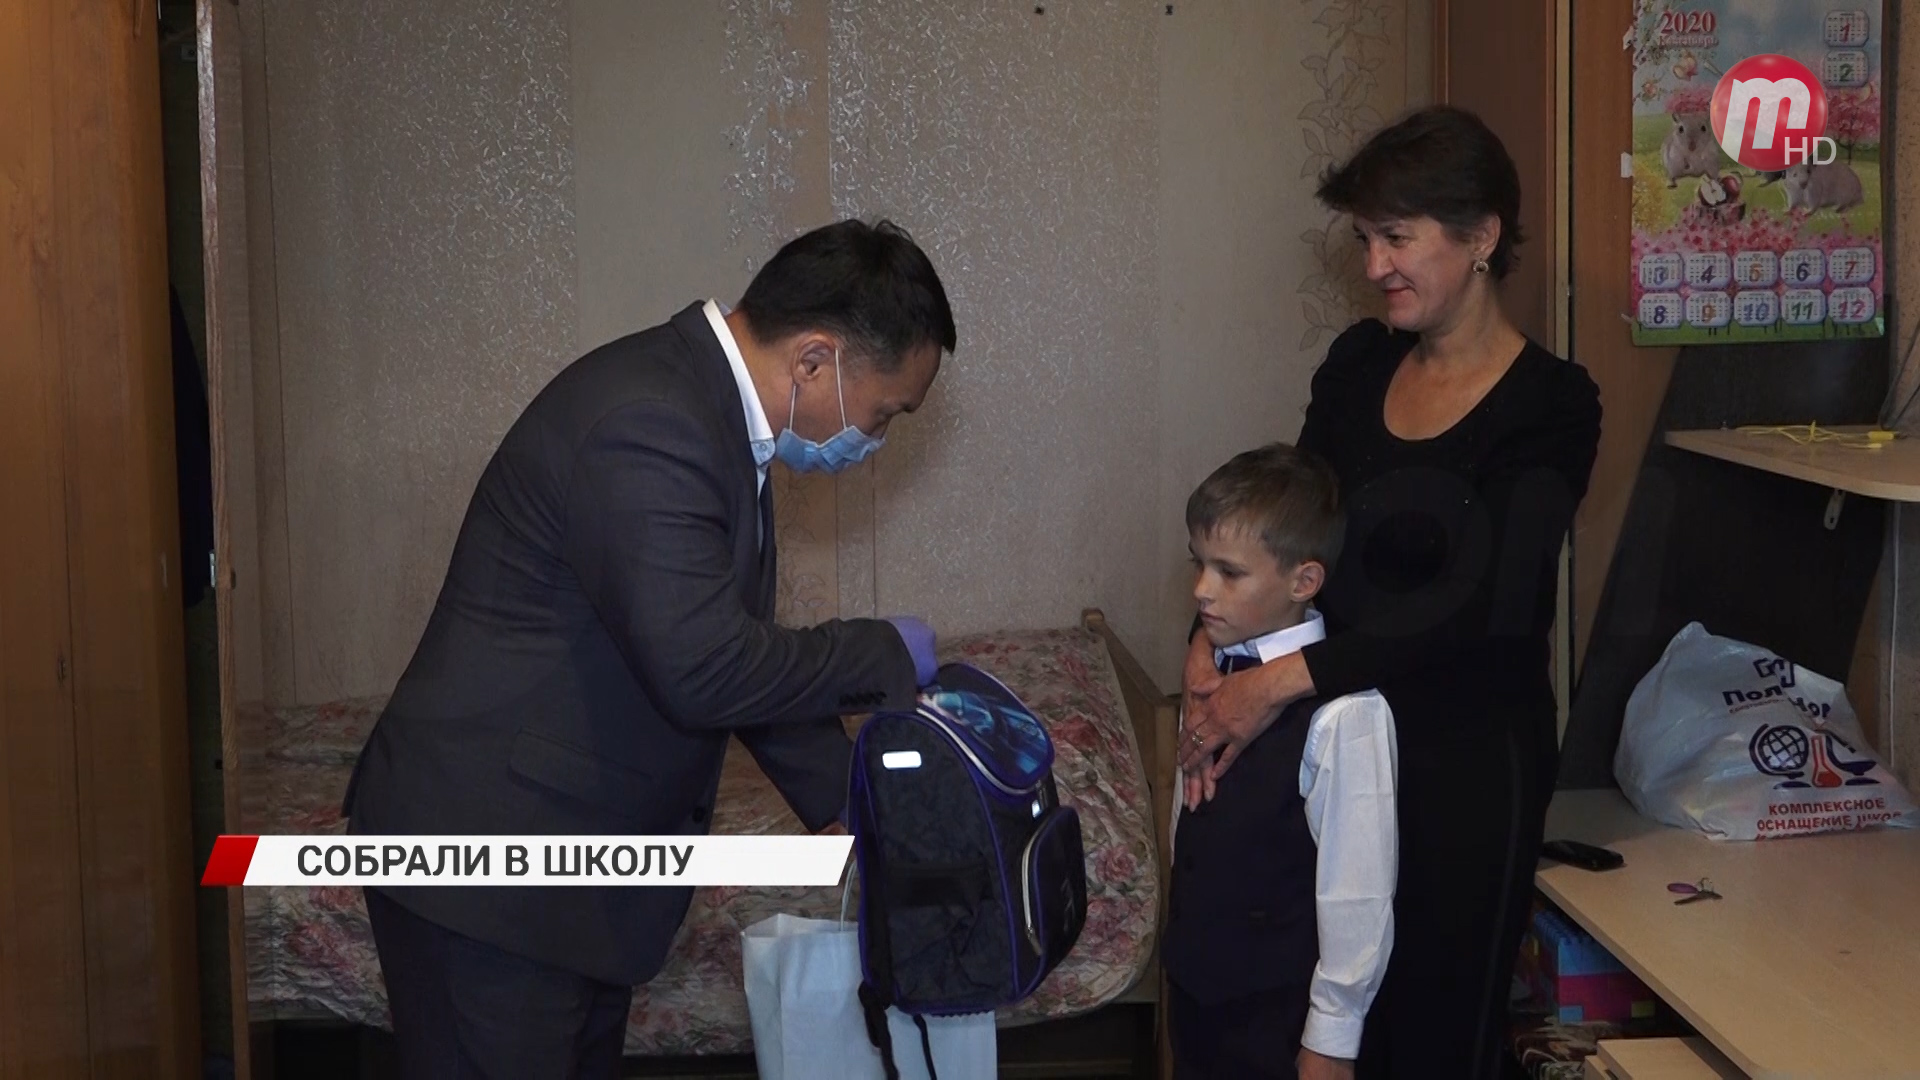 Чтобы портфель был полон пятерок и четверок! 25 семей в Улан-Удэ получат минимальный набор школьника